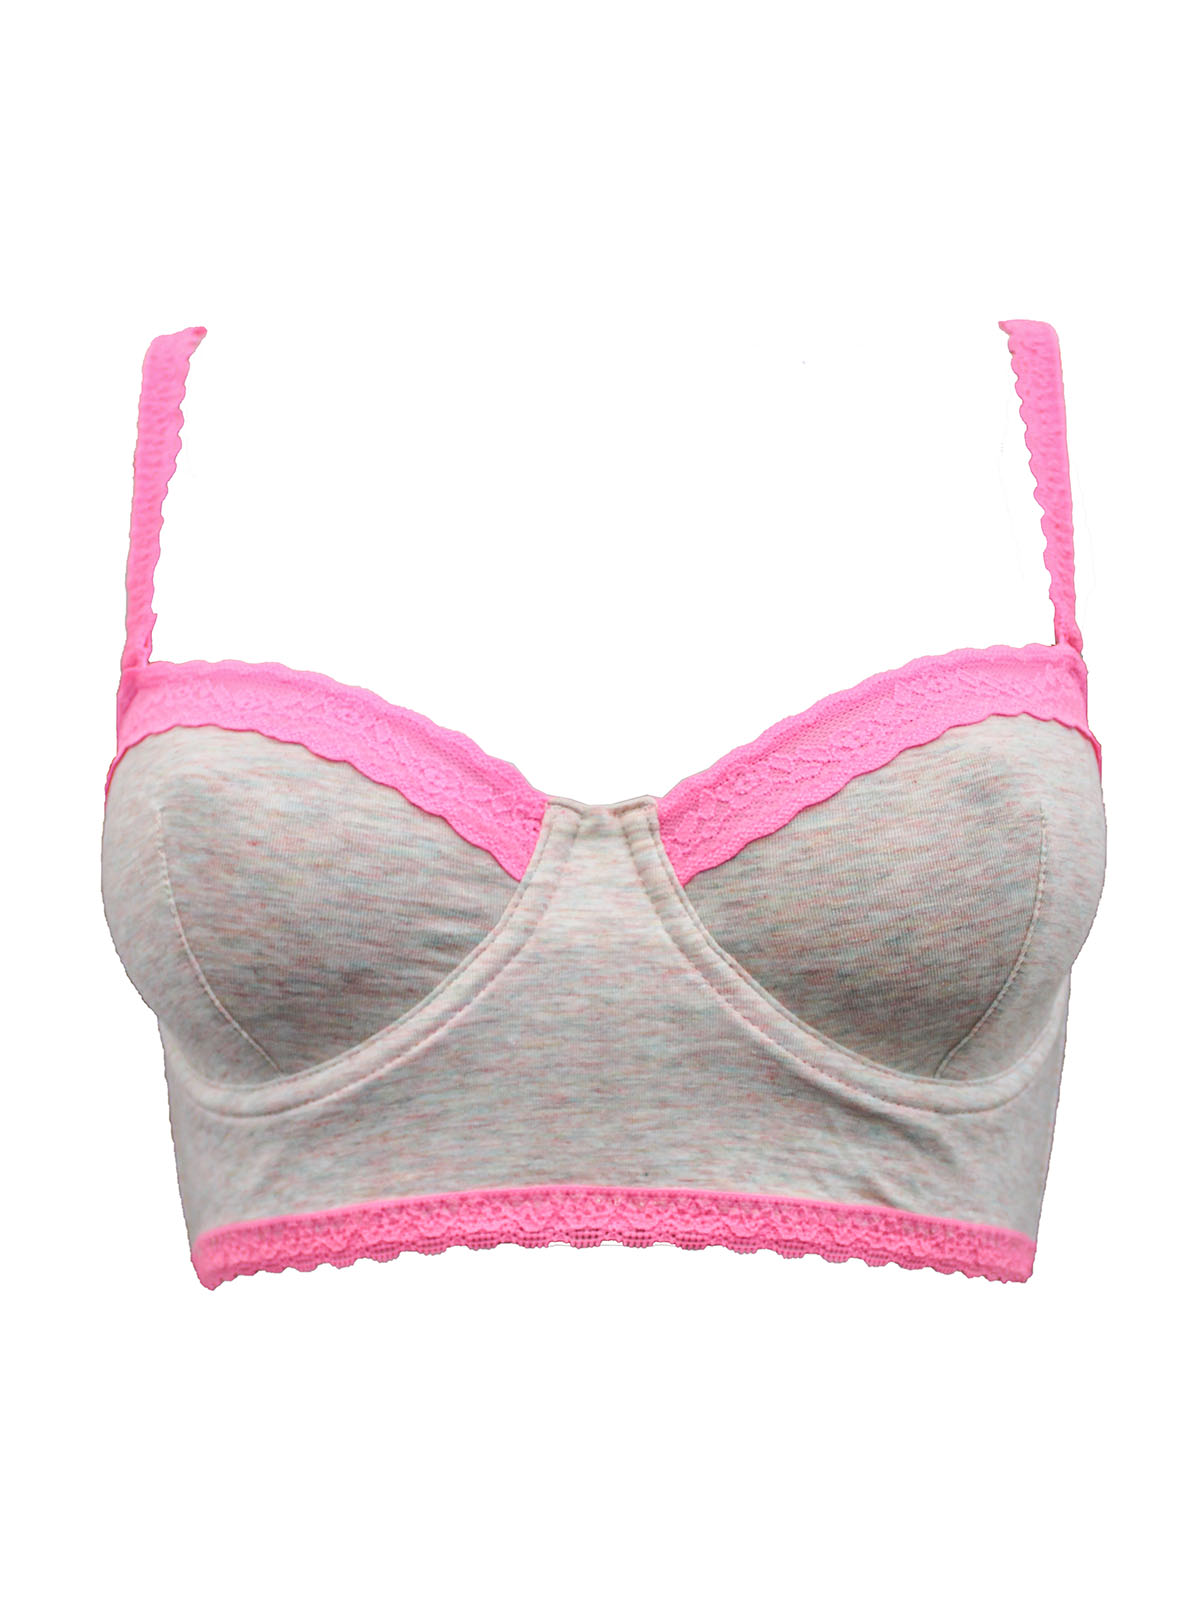 Victoria's Secret - - VS GREY PINK Contrast Lace Contour Cotton Adjustable  Straps Longline Bra - Size